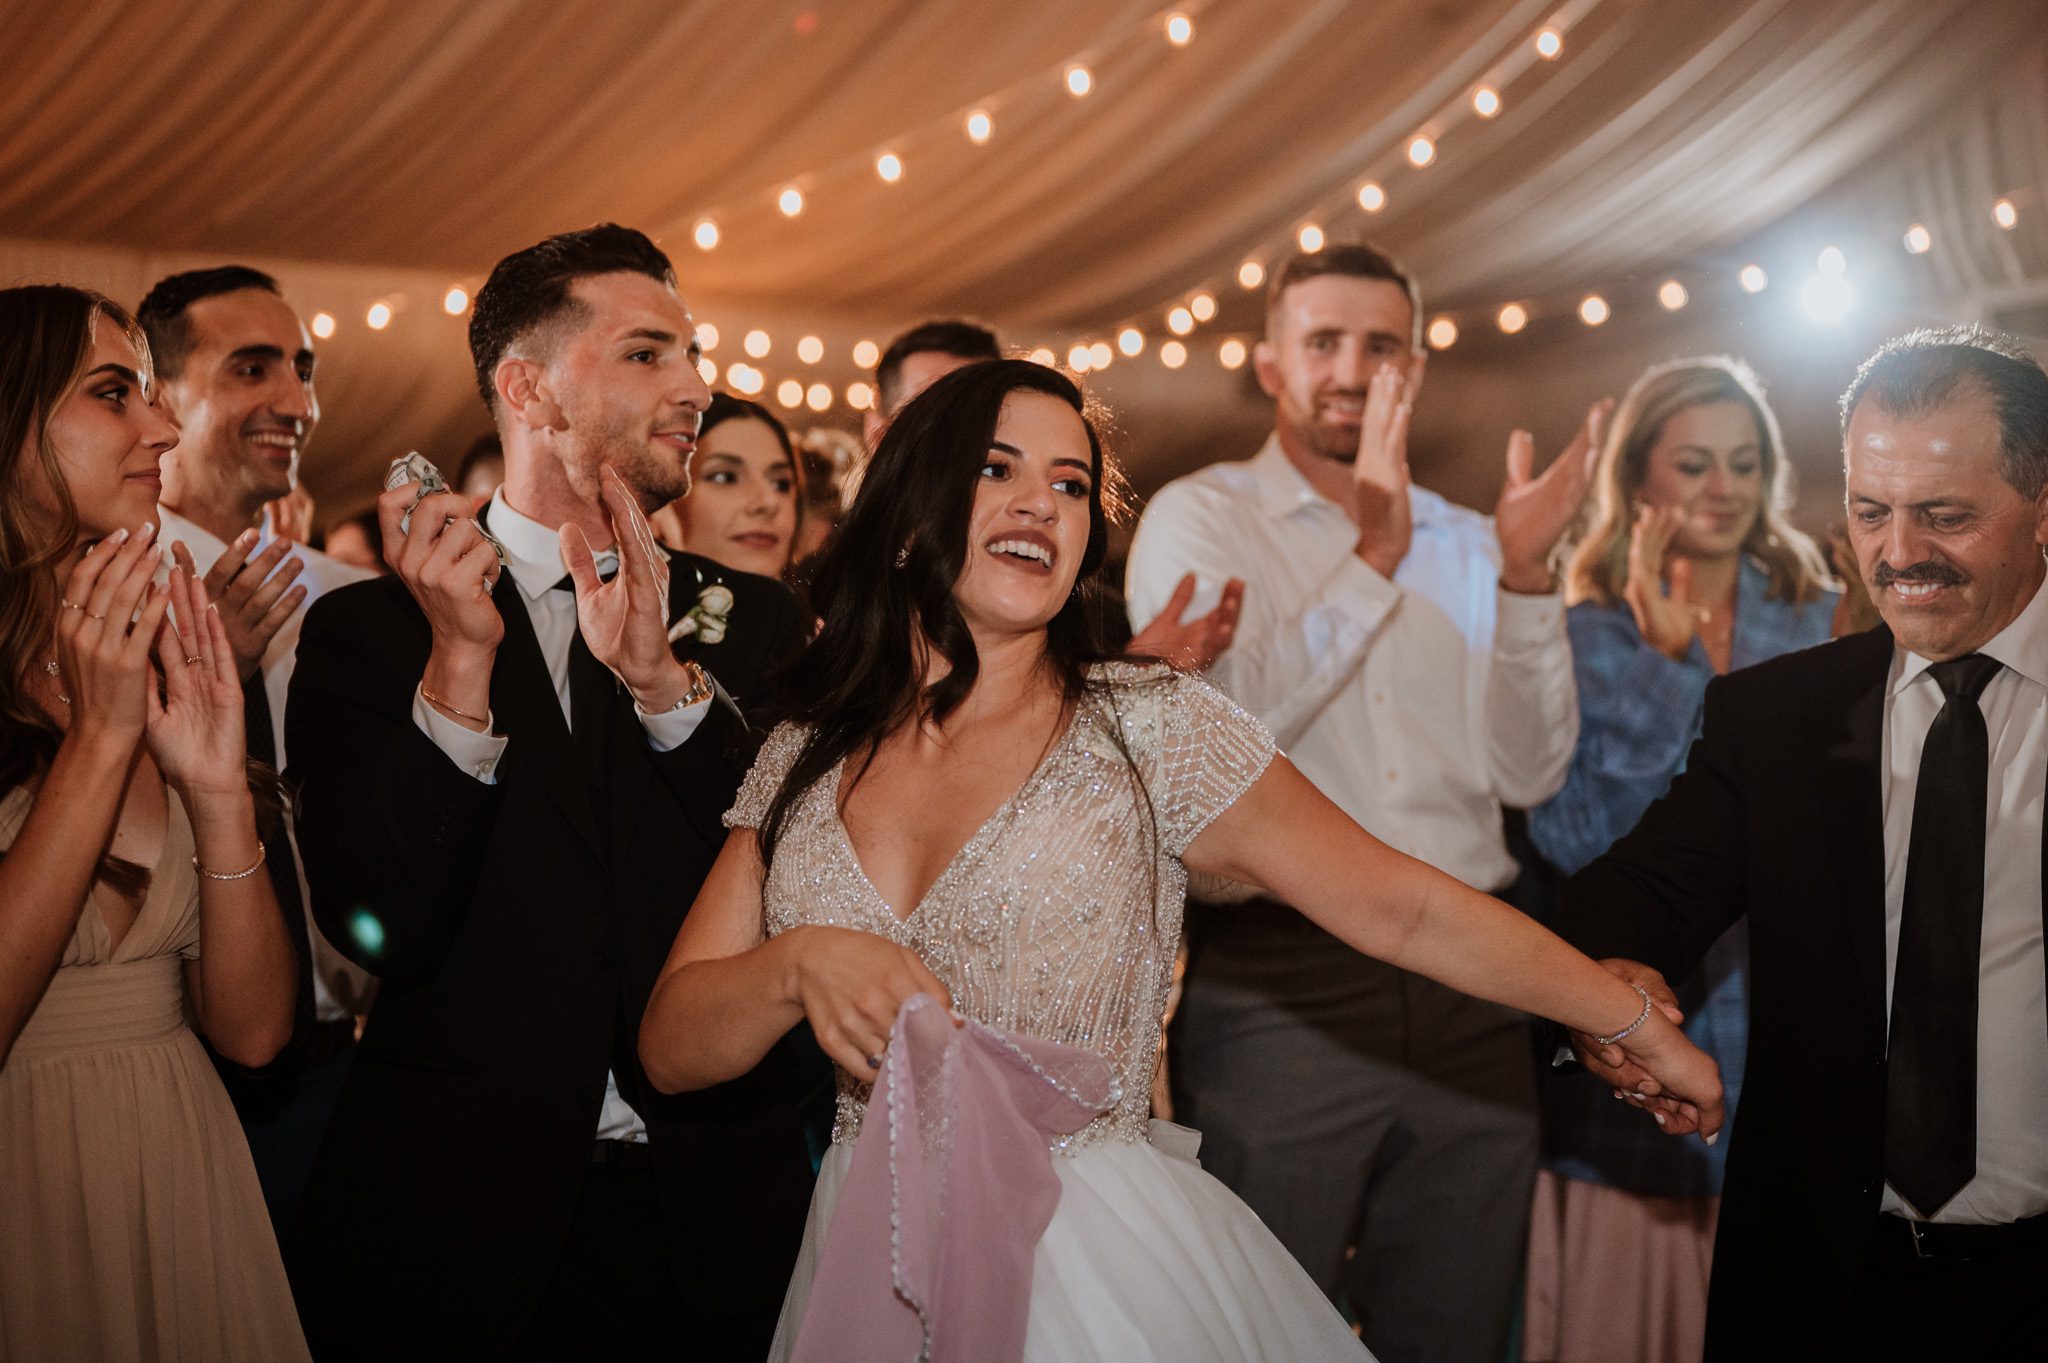 Westin Chicago wedding dancing photos